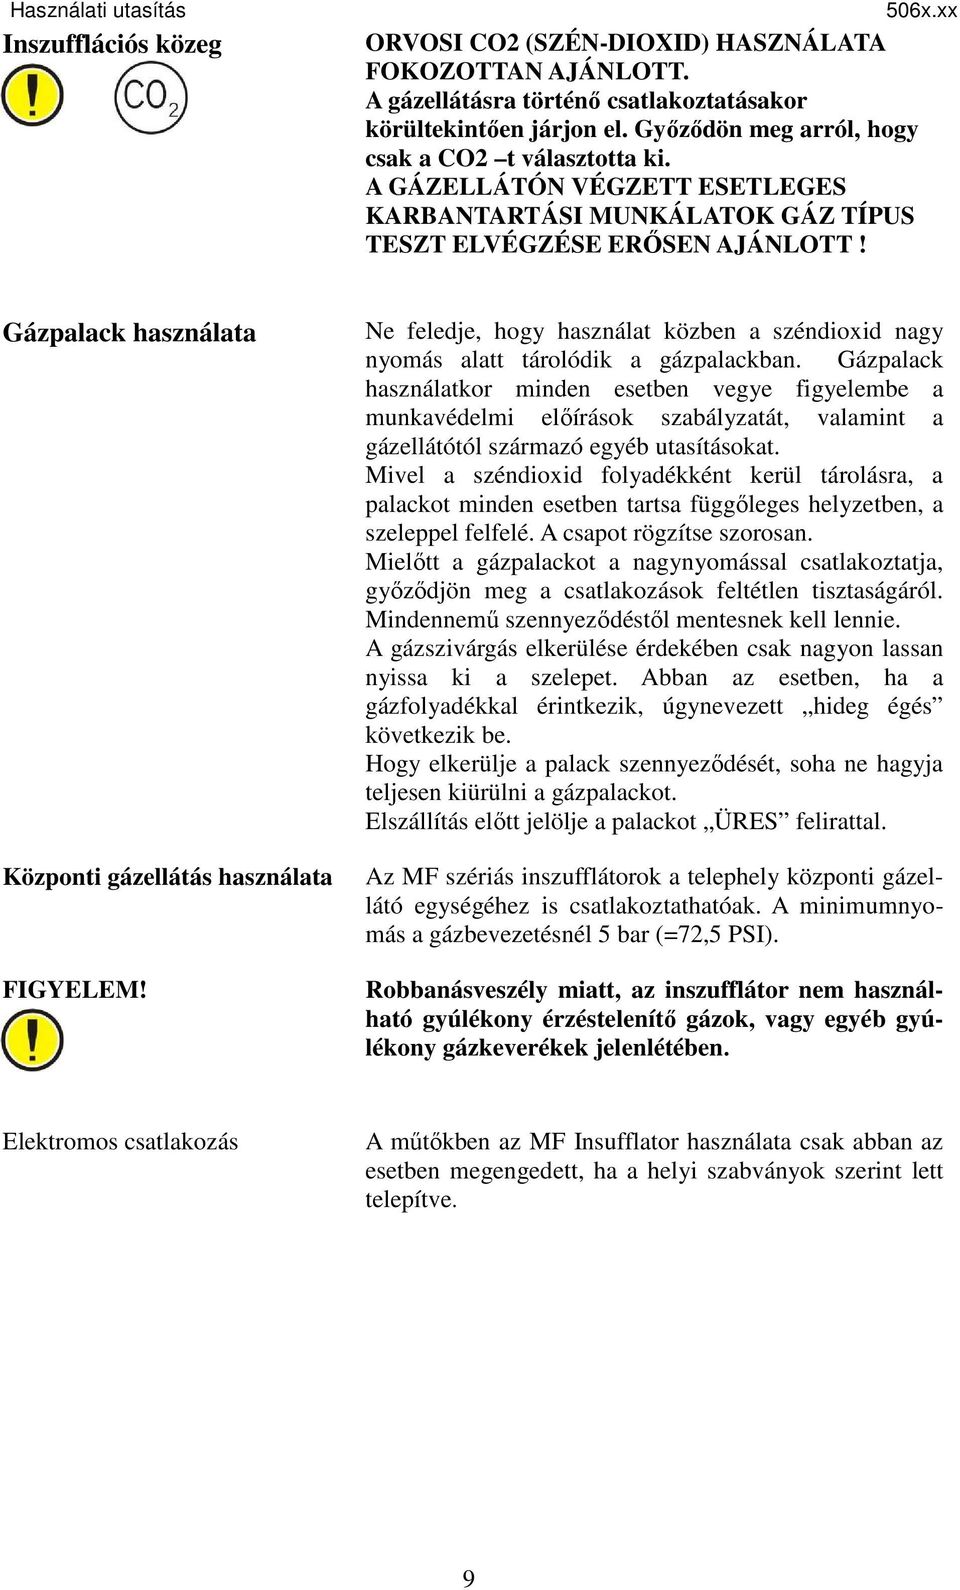 Insufflator MF HASZNÁLATI UTASÍTÁS (506x.xx modellek) - PDF Ingyenes  letöltés